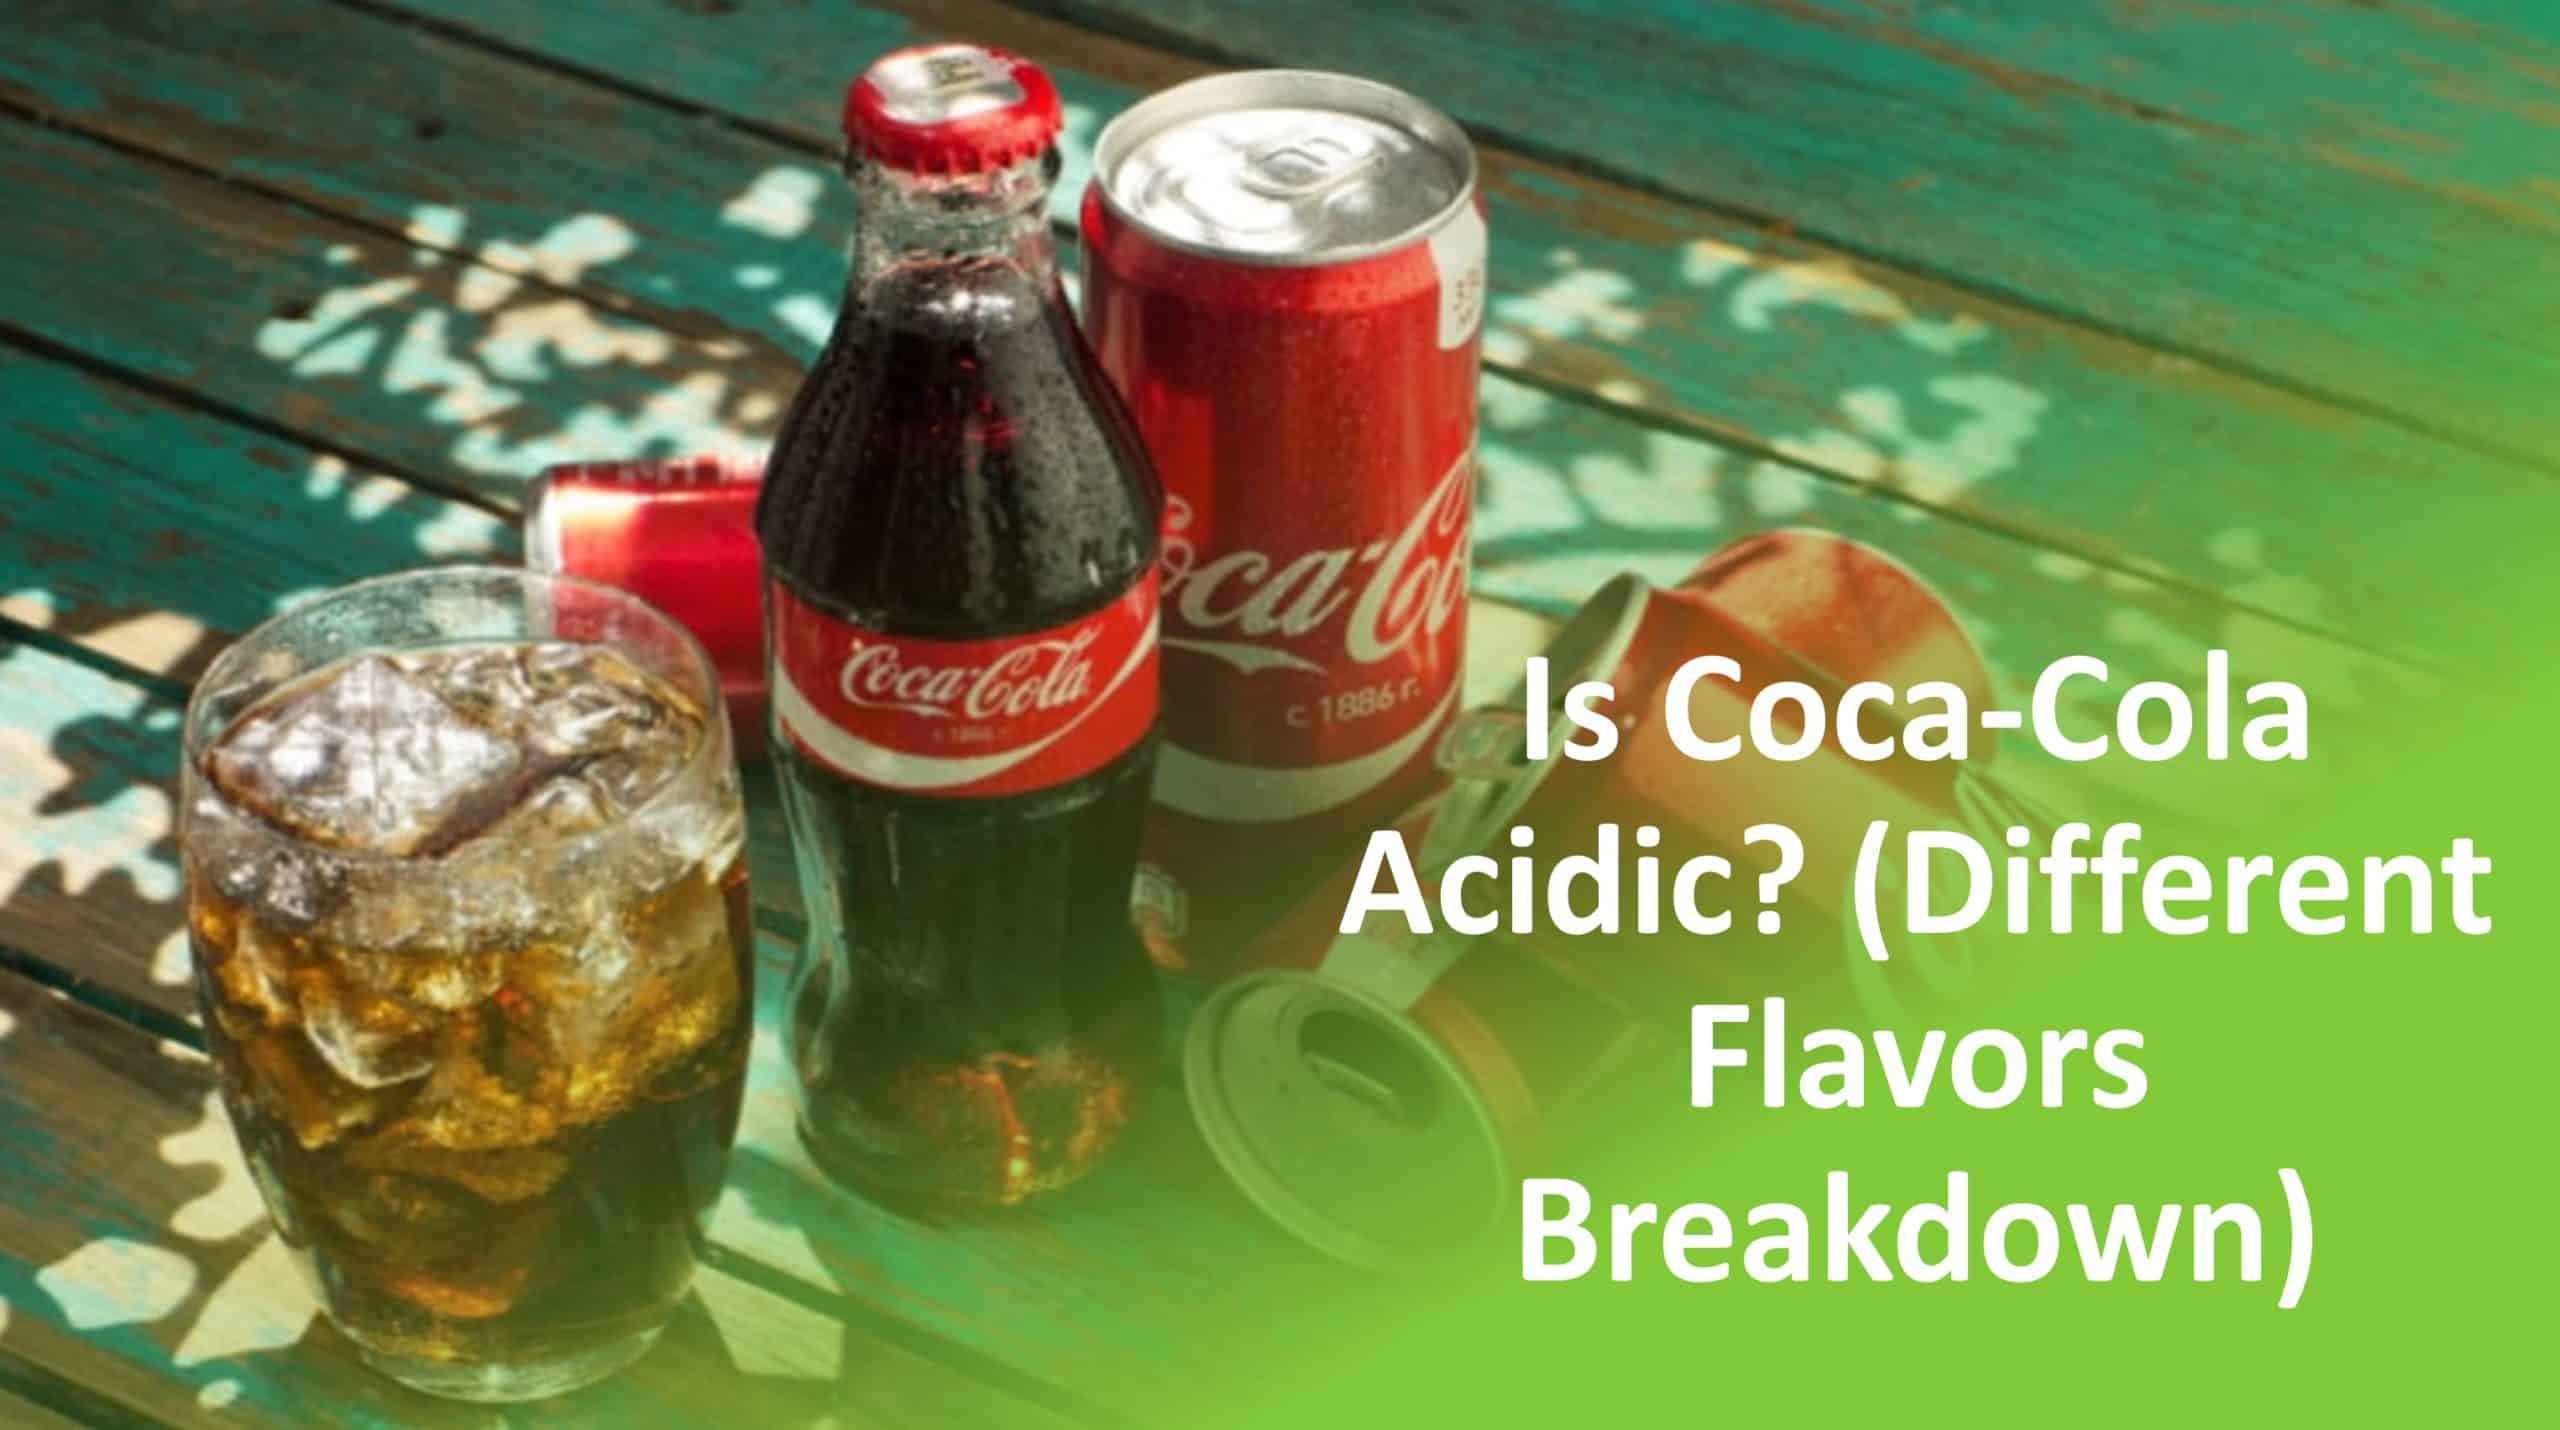 Coca-Cola (Different Flavors Breakdown)